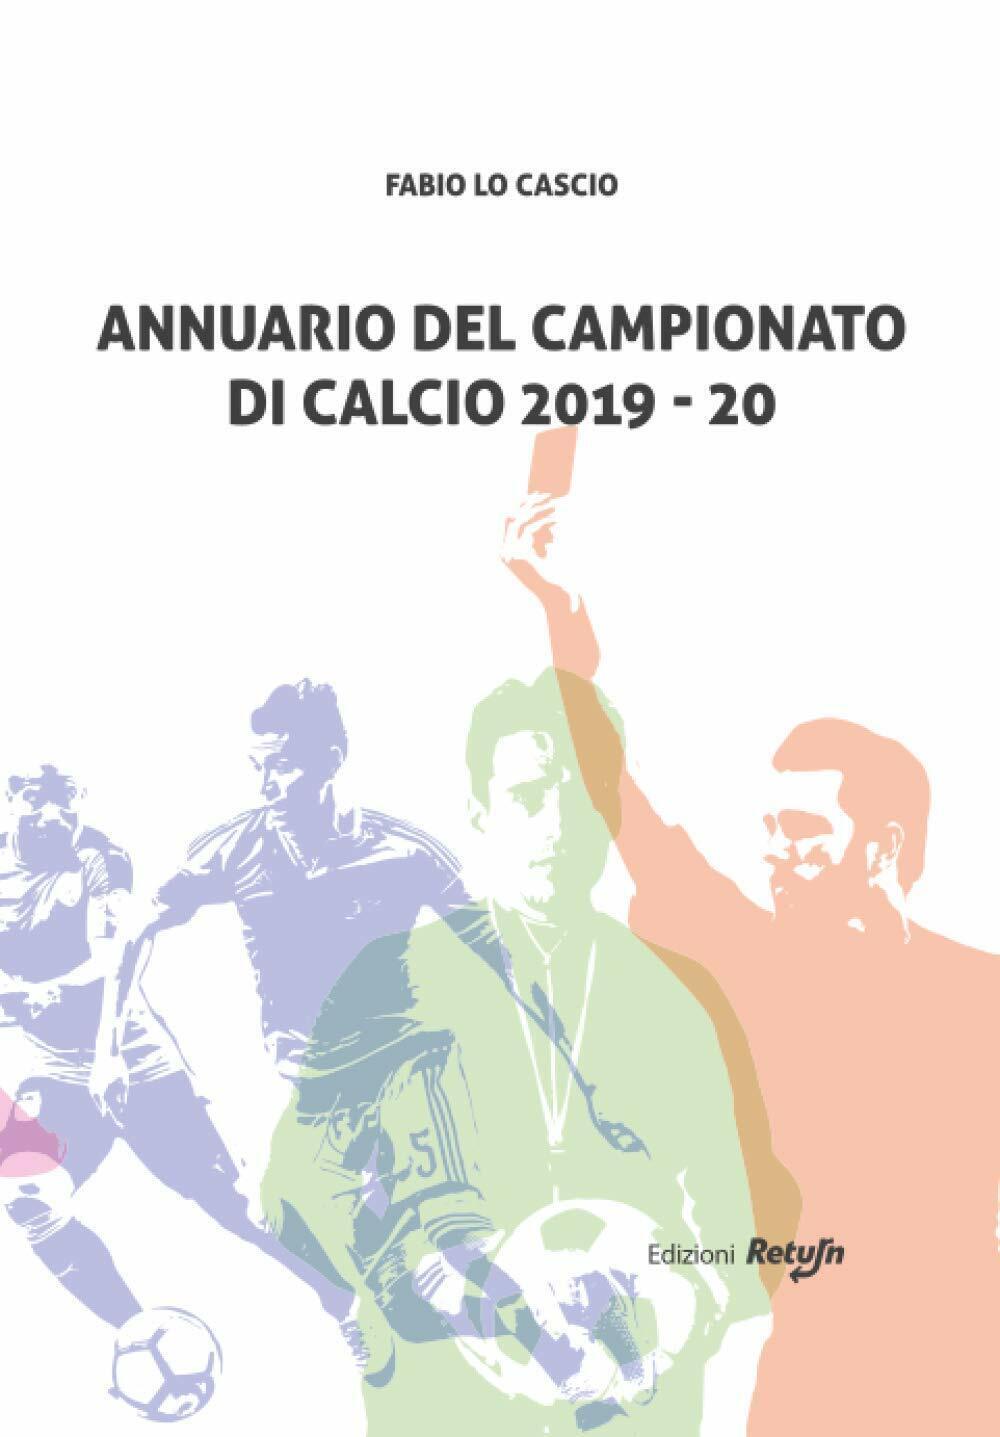 Annuario del Campionato di Calcio 2019-20 - Fabio Lo Cascio - Return, 2020 libro usato